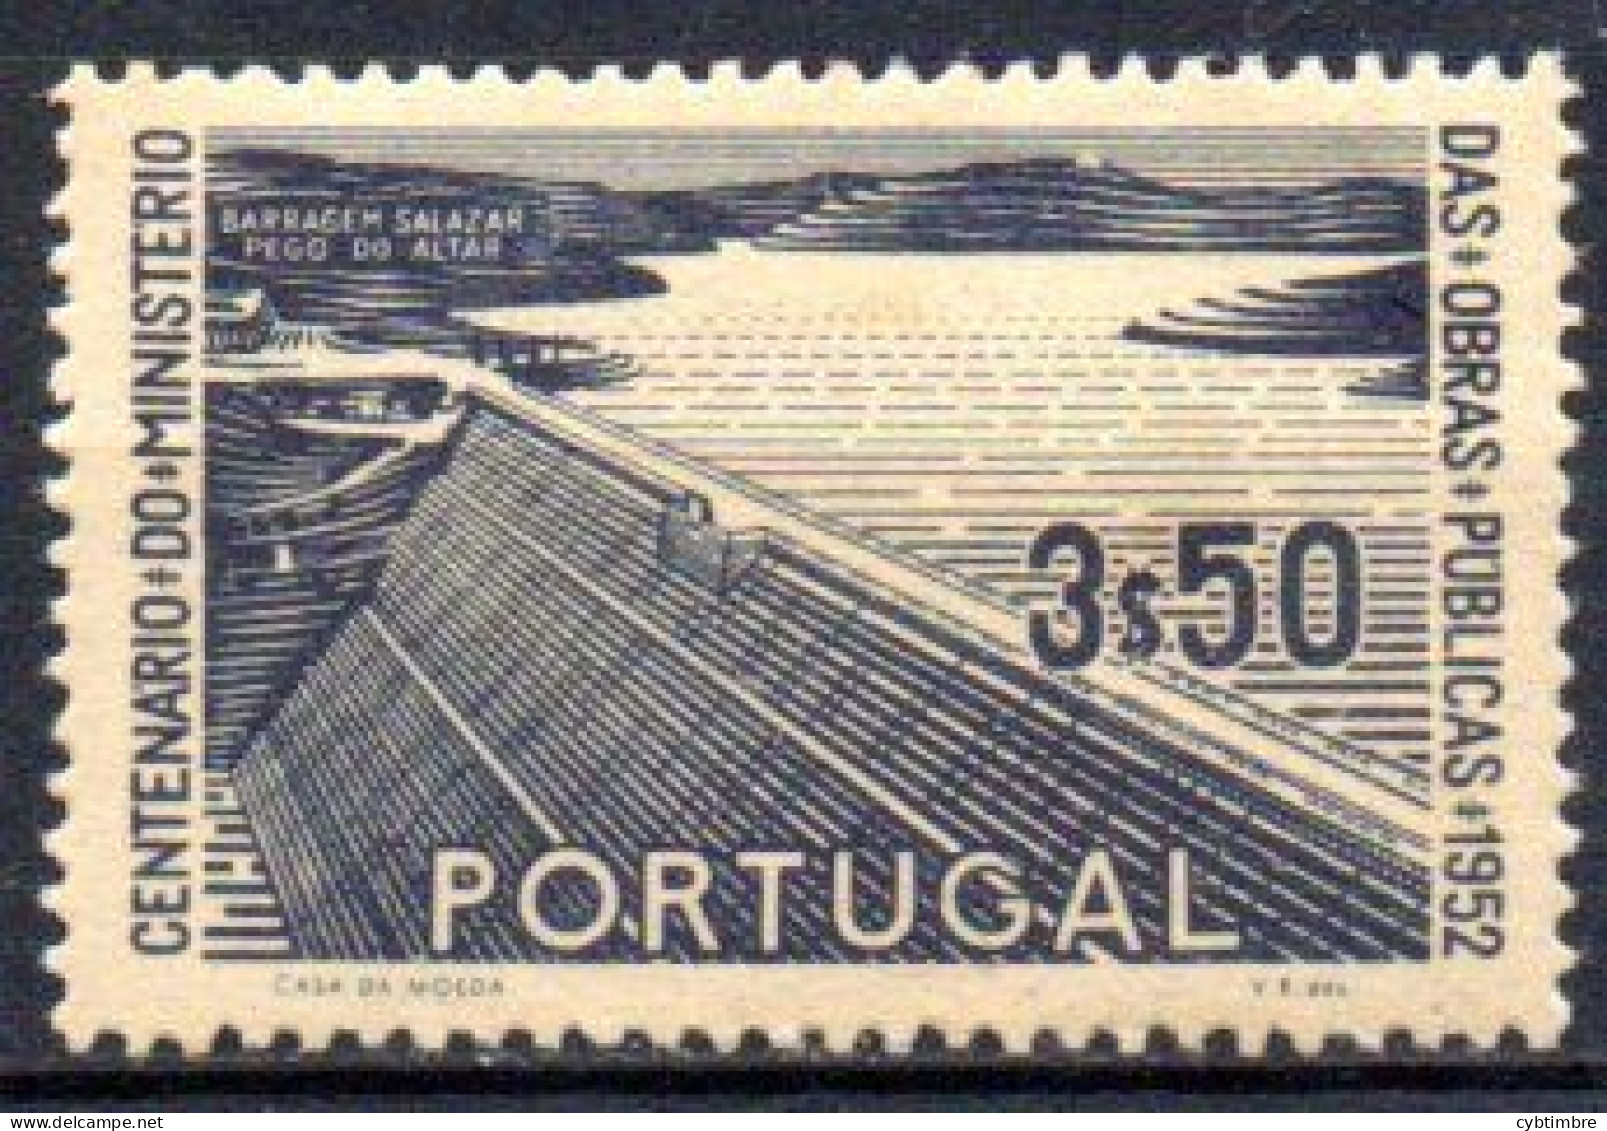 Portugal: Yvert N° 769*: Cote 11.00€; Barrage - Unused Stamps